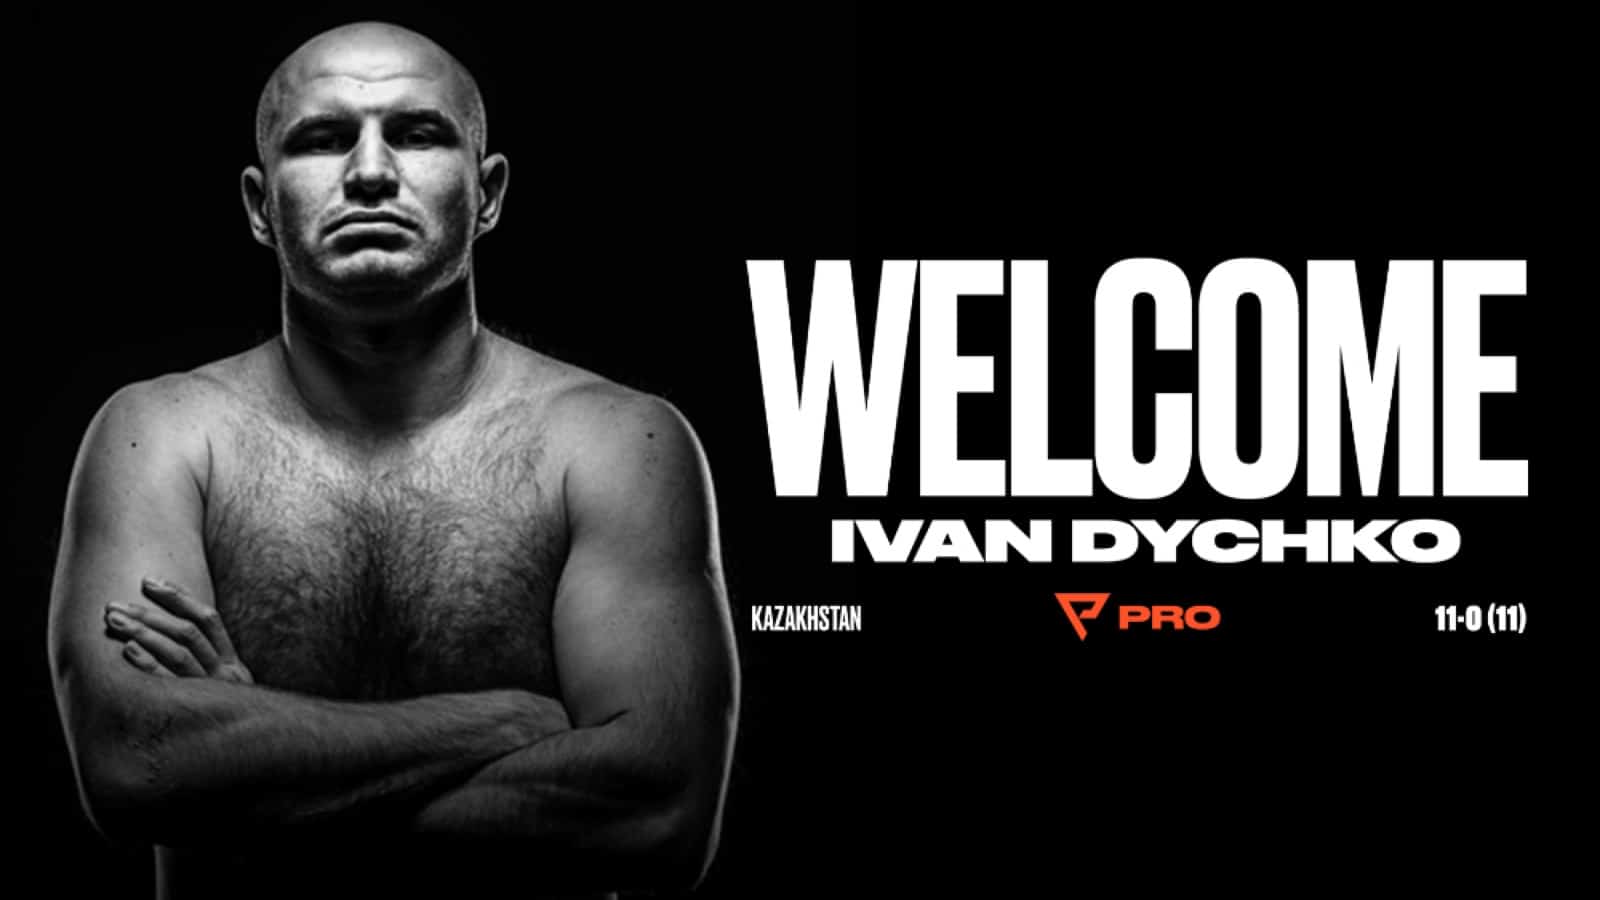 Ivan Dychko boxing image / photo